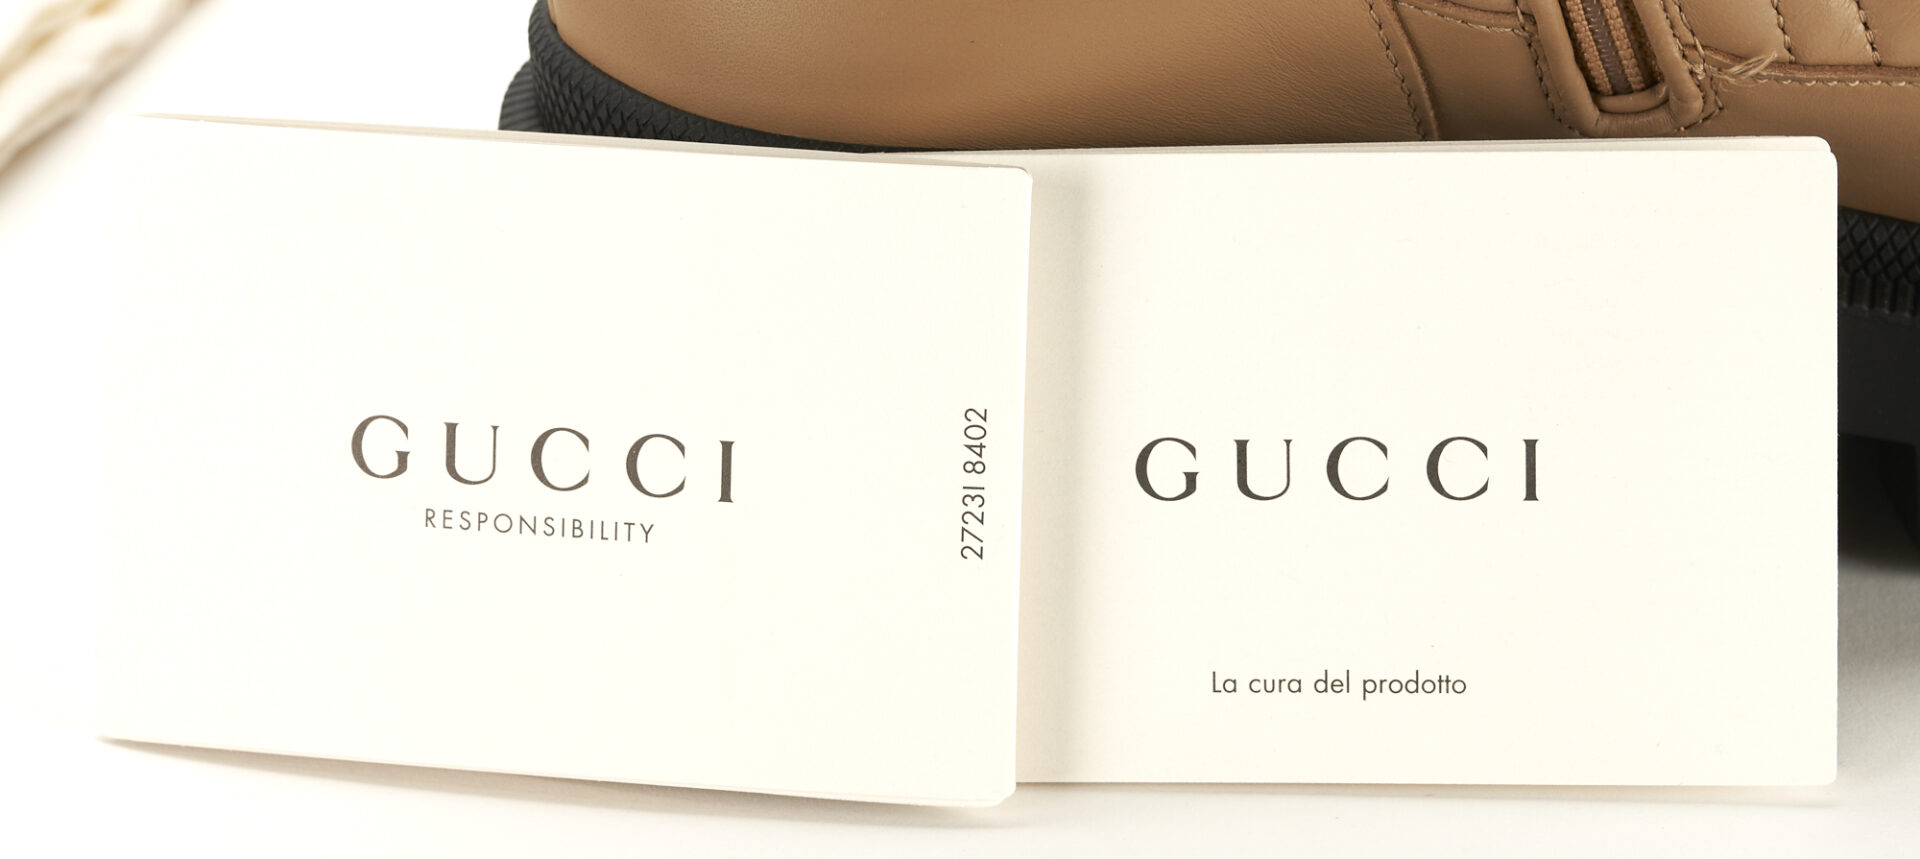 Lot 1177: Gucci Frances Tan Combat Boots, GG Matelasse